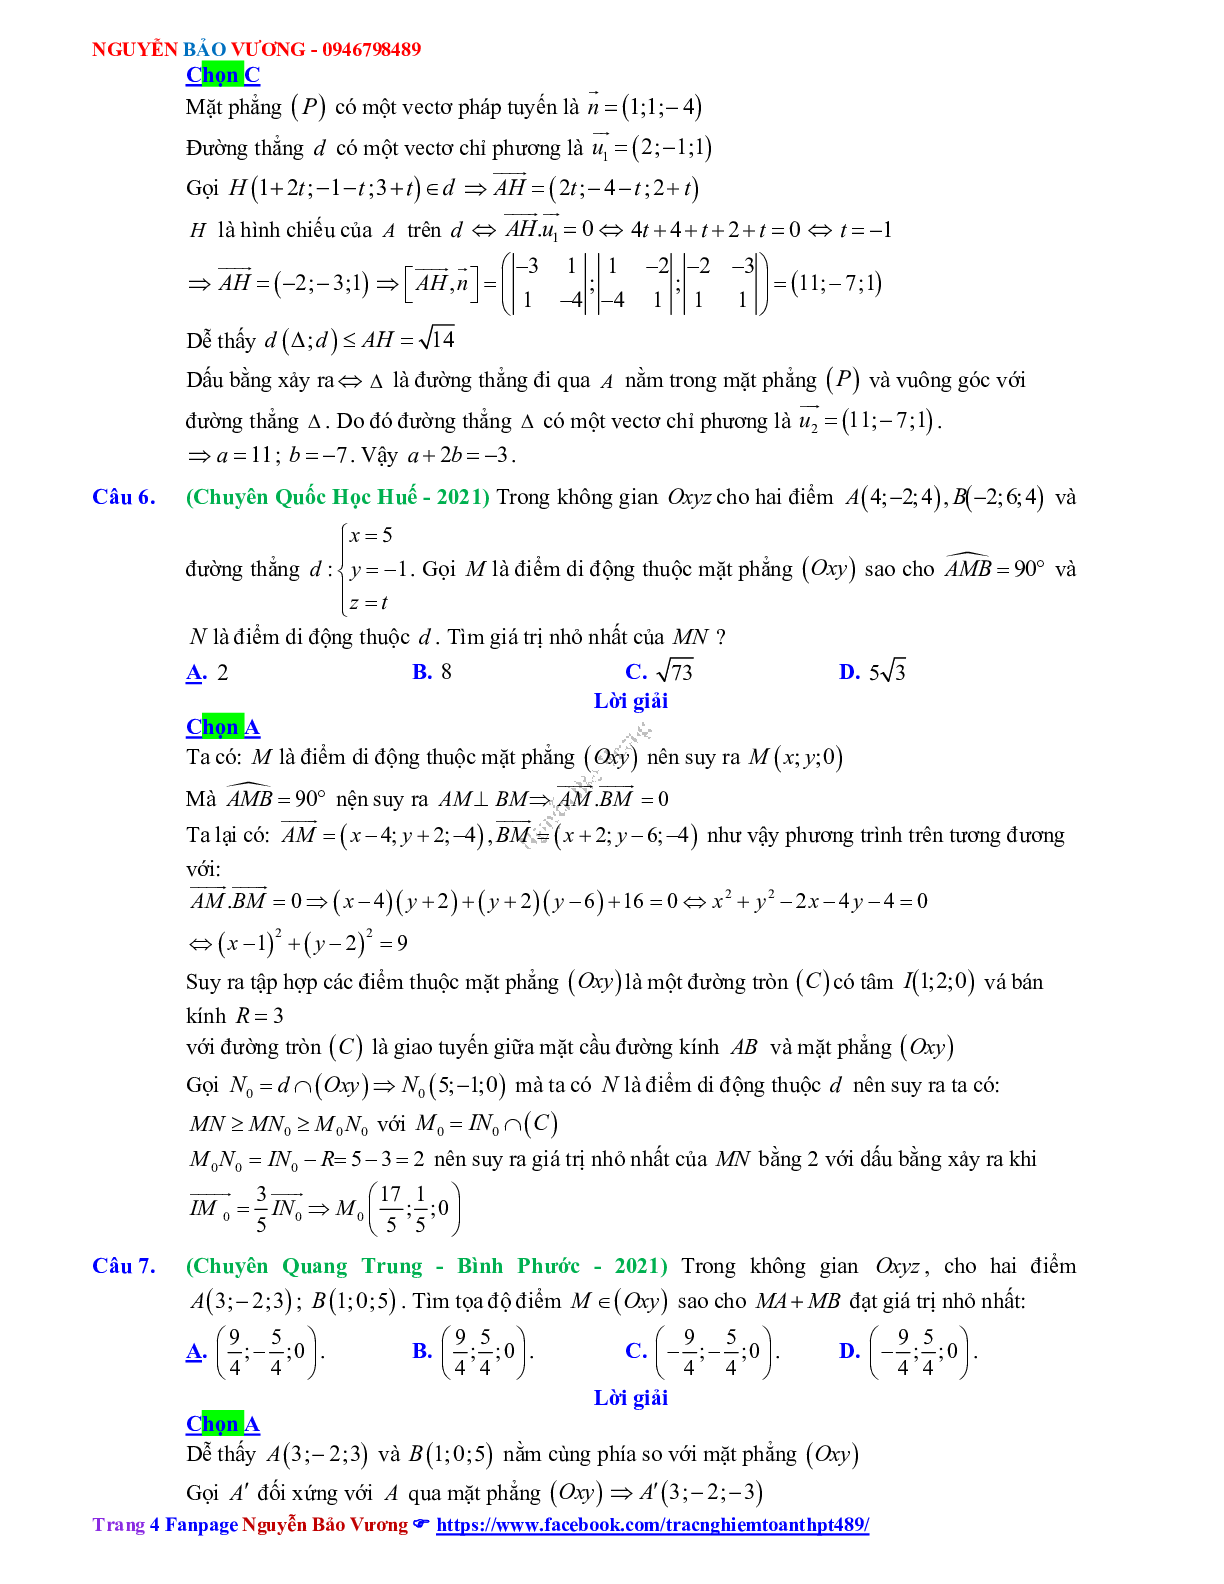 Trắc nghiệm Ôn thi THPT QG Toán 12: Đáp án phương pháp tọa độ trong không gian mức độ vận dụng cao (trang 4)